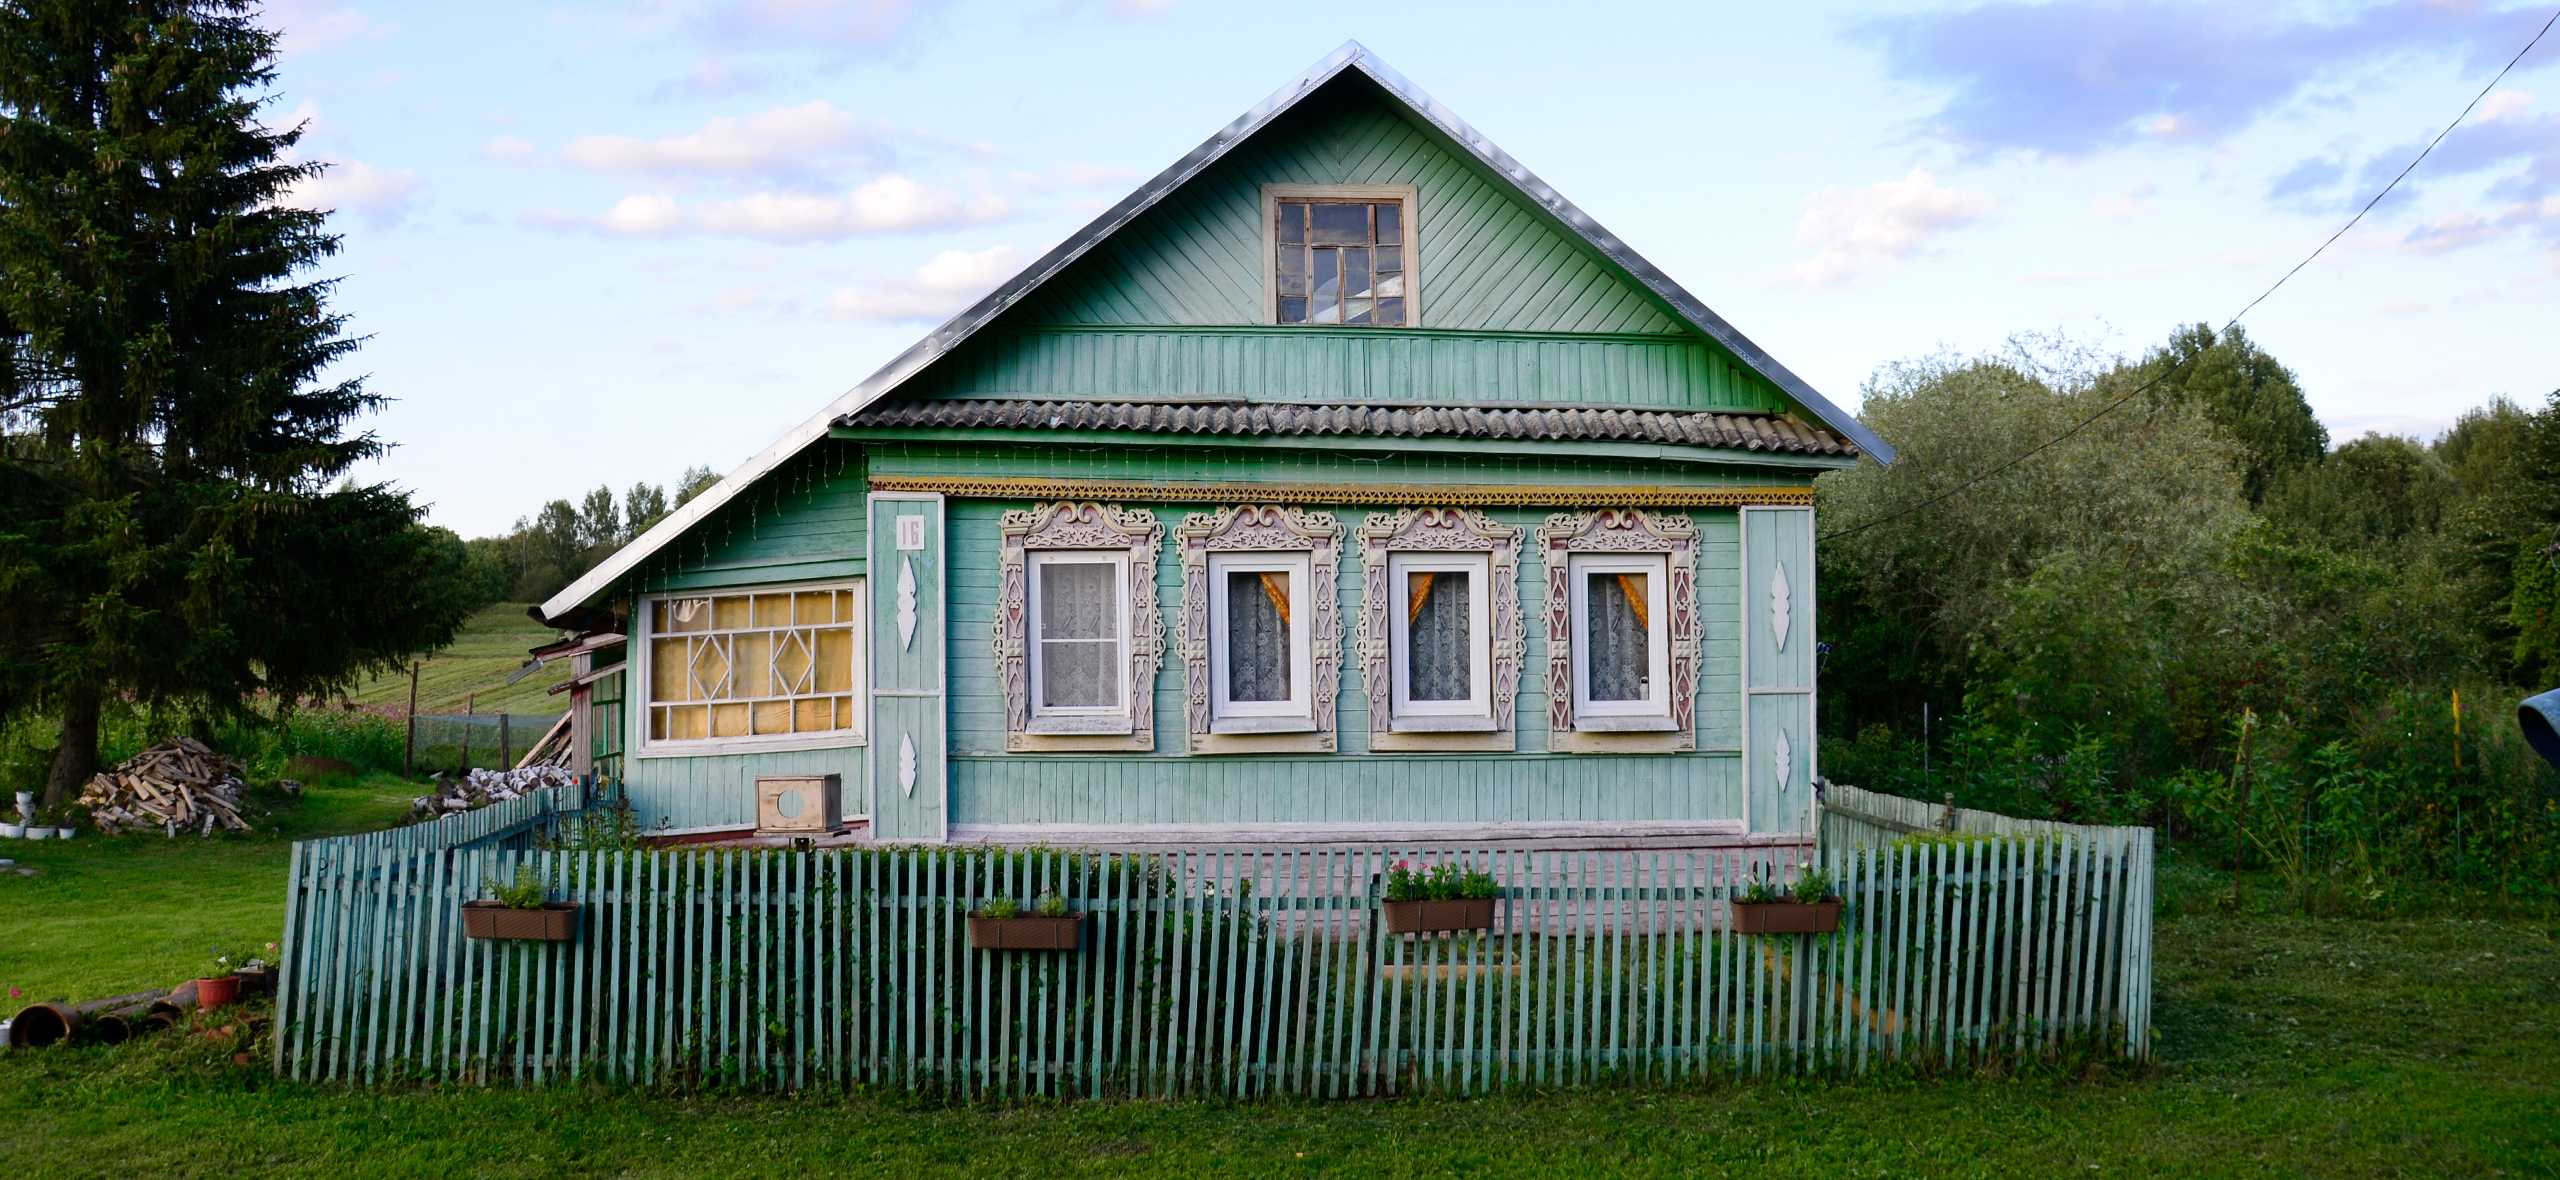 Мы купили 100-летний дом в деревне за 650 000 ₽ в трех часах езды от Москвы